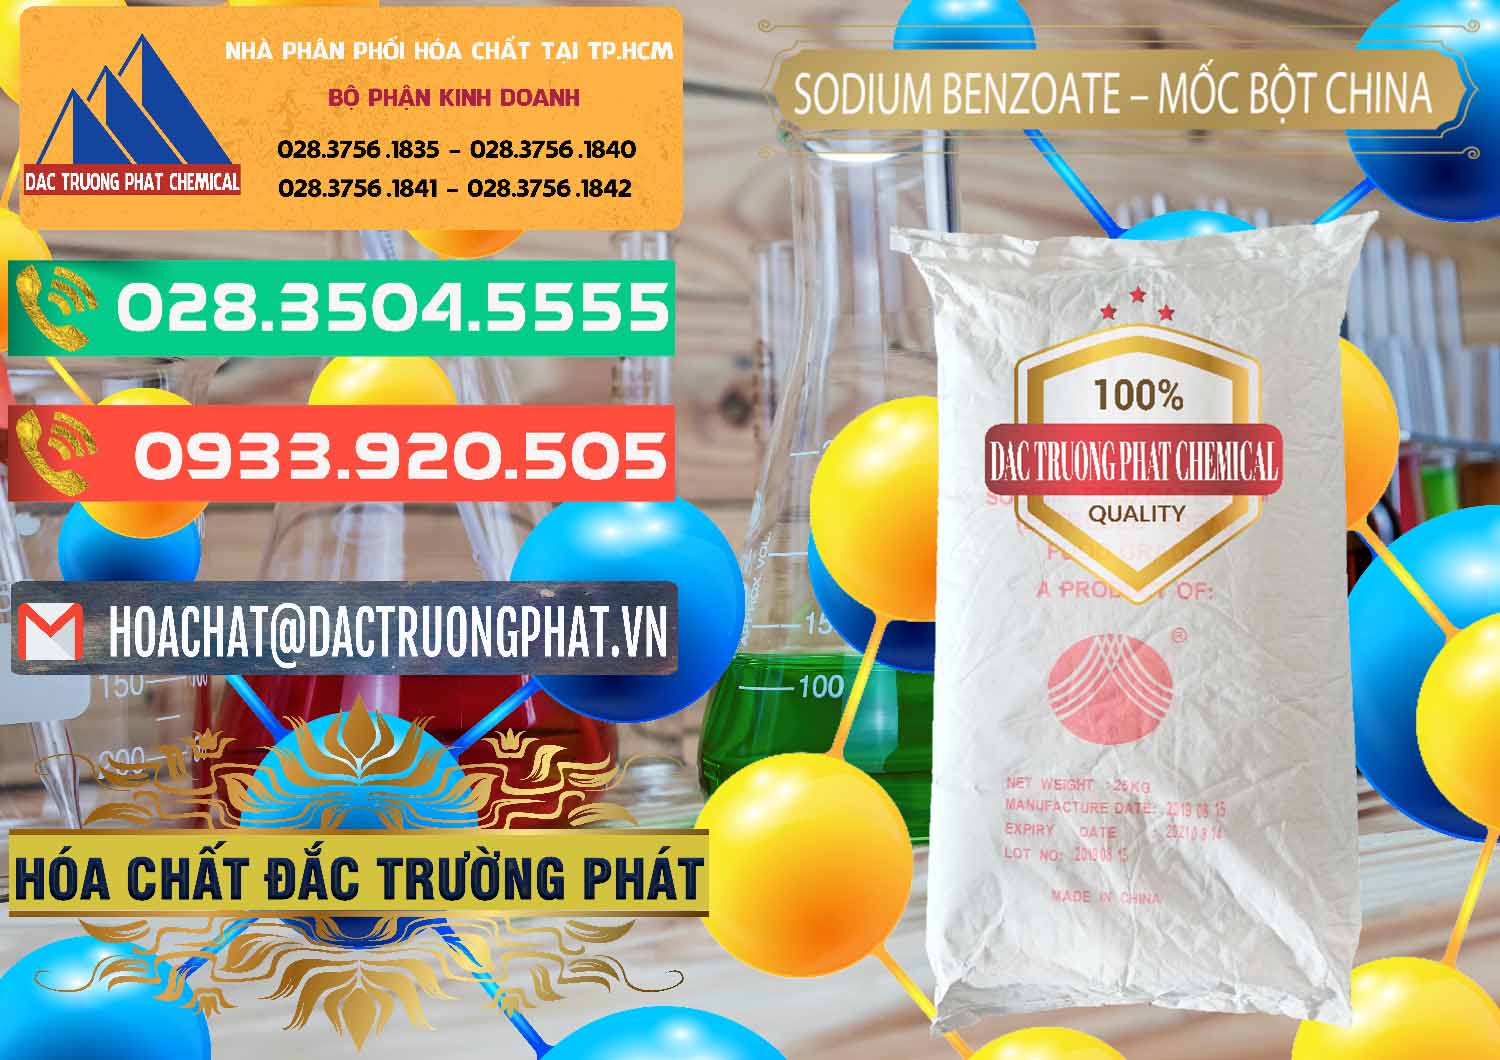 Cty bán & cung cấp Sodium Benzoate - Mốc Bột Chữ Cam Food Grade Trung Quốc China - 0135 - Đơn vị chuyên cung cấp & nhập khẩu hóa chất tại TP.HCM - congtyhoachat.com.vn